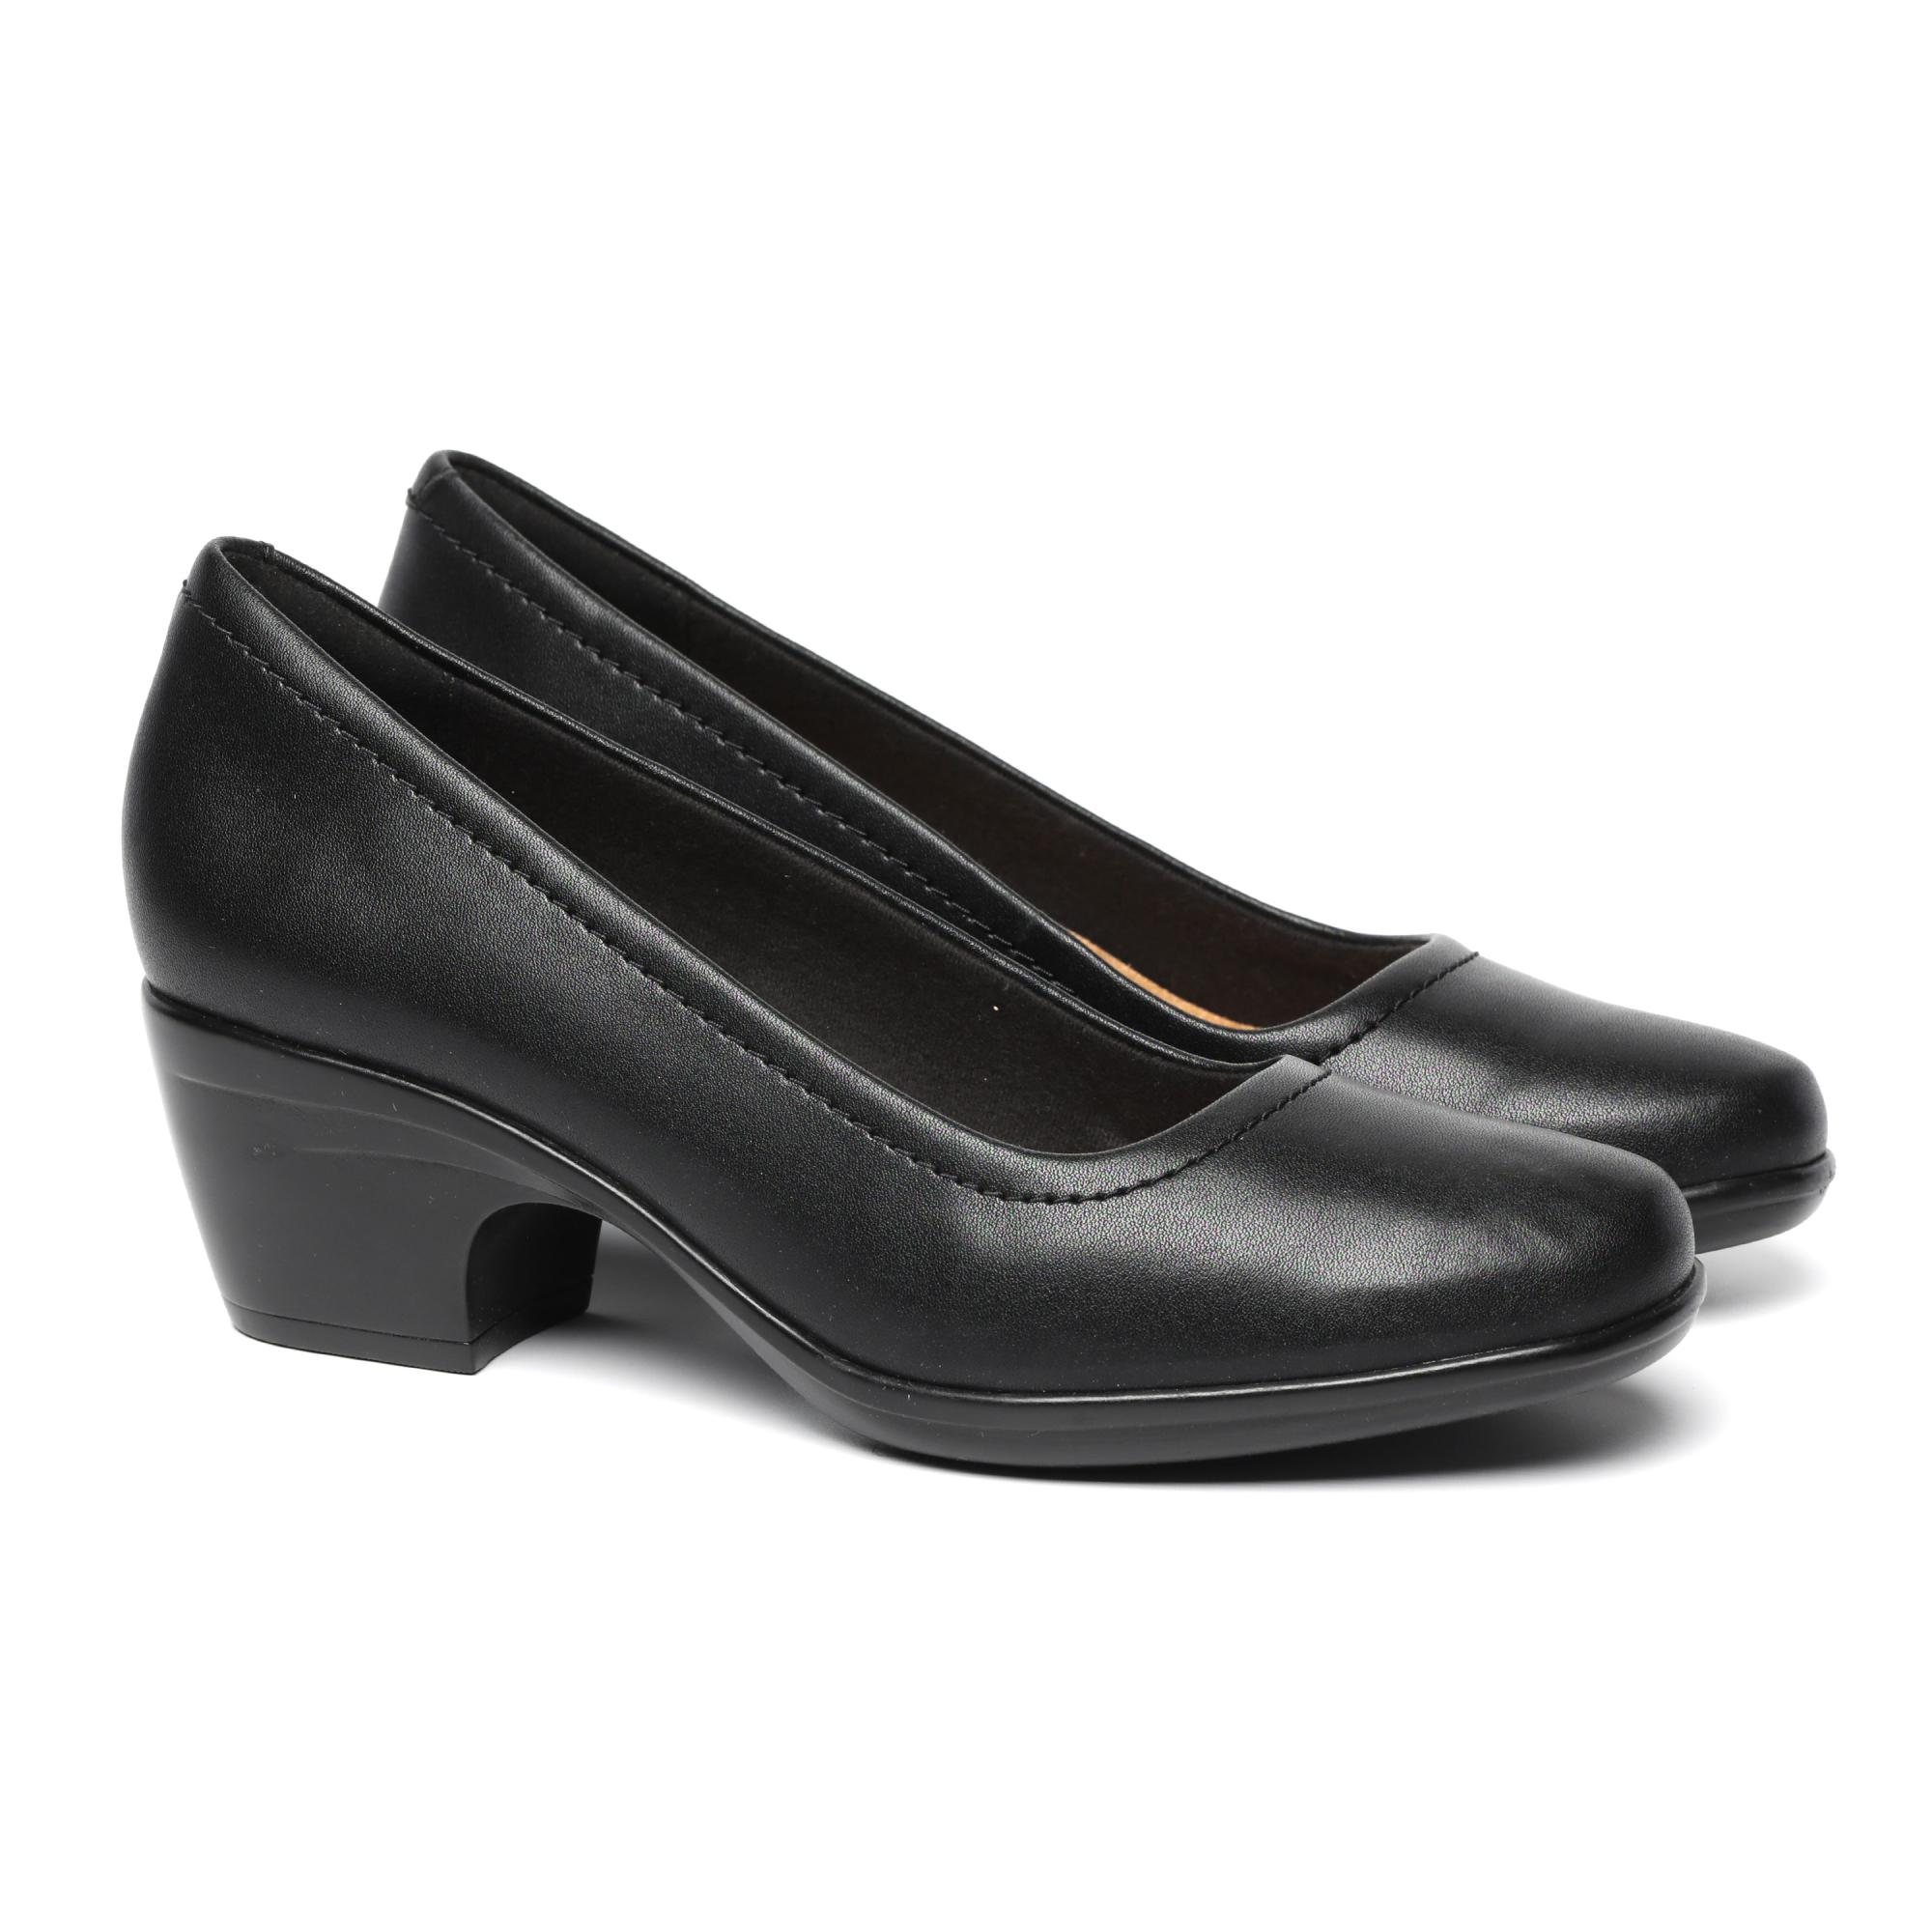 Женские туфли-лодочки Clarks, черные, цвет черный, размер 37 - фото 1